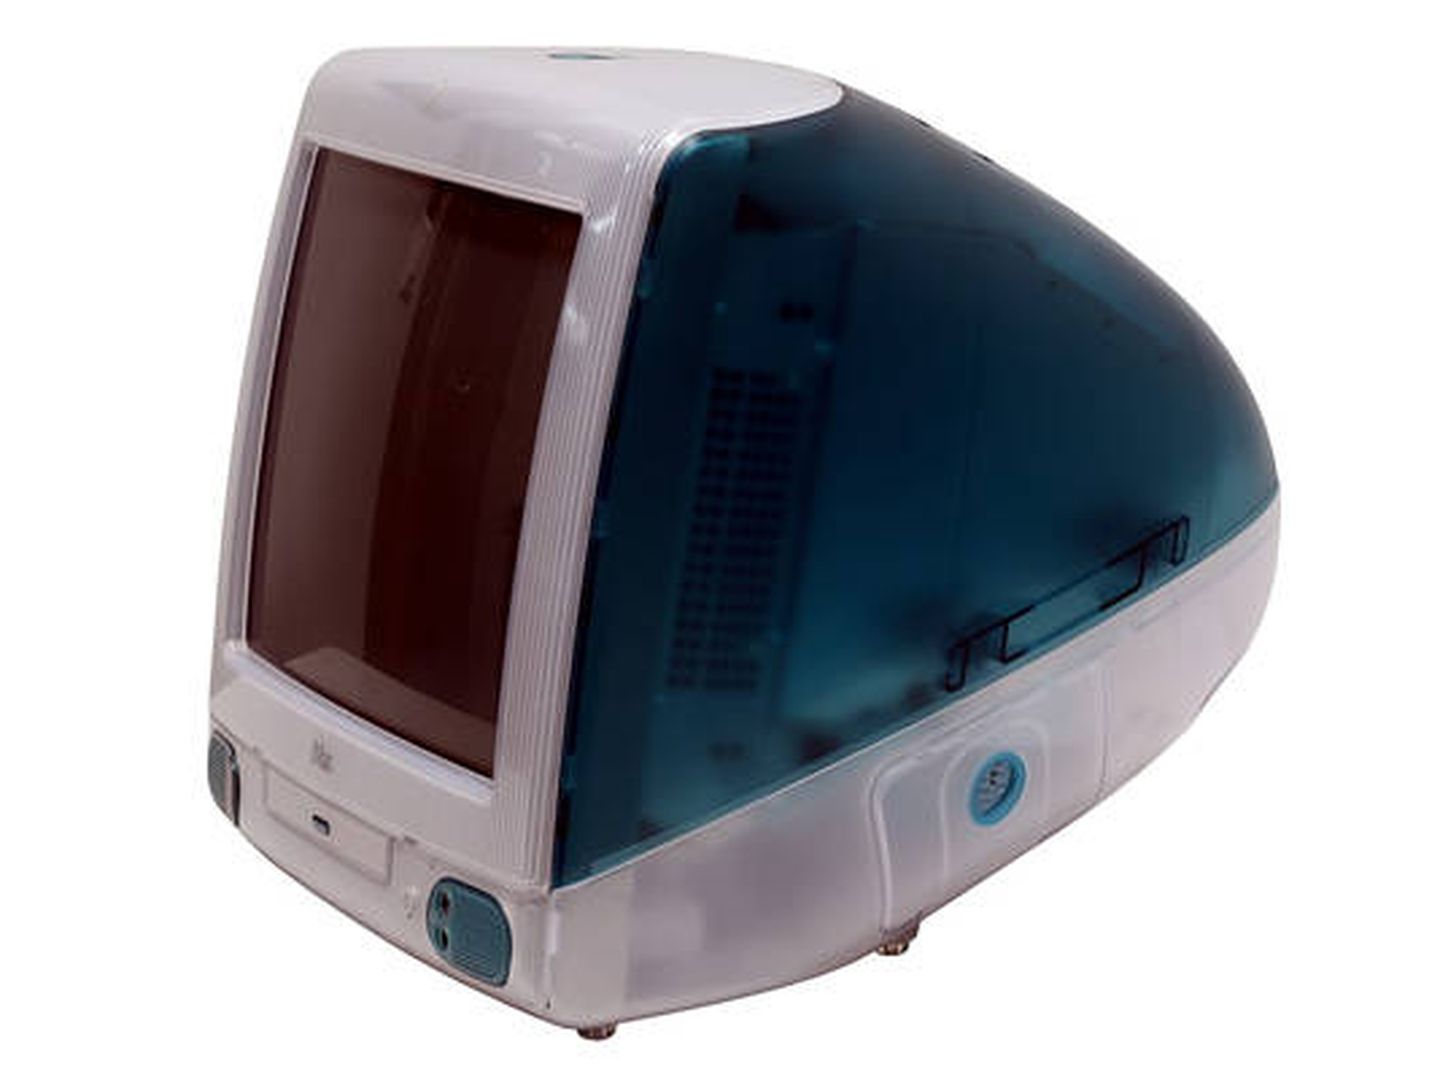 El iMac G3, de 1998